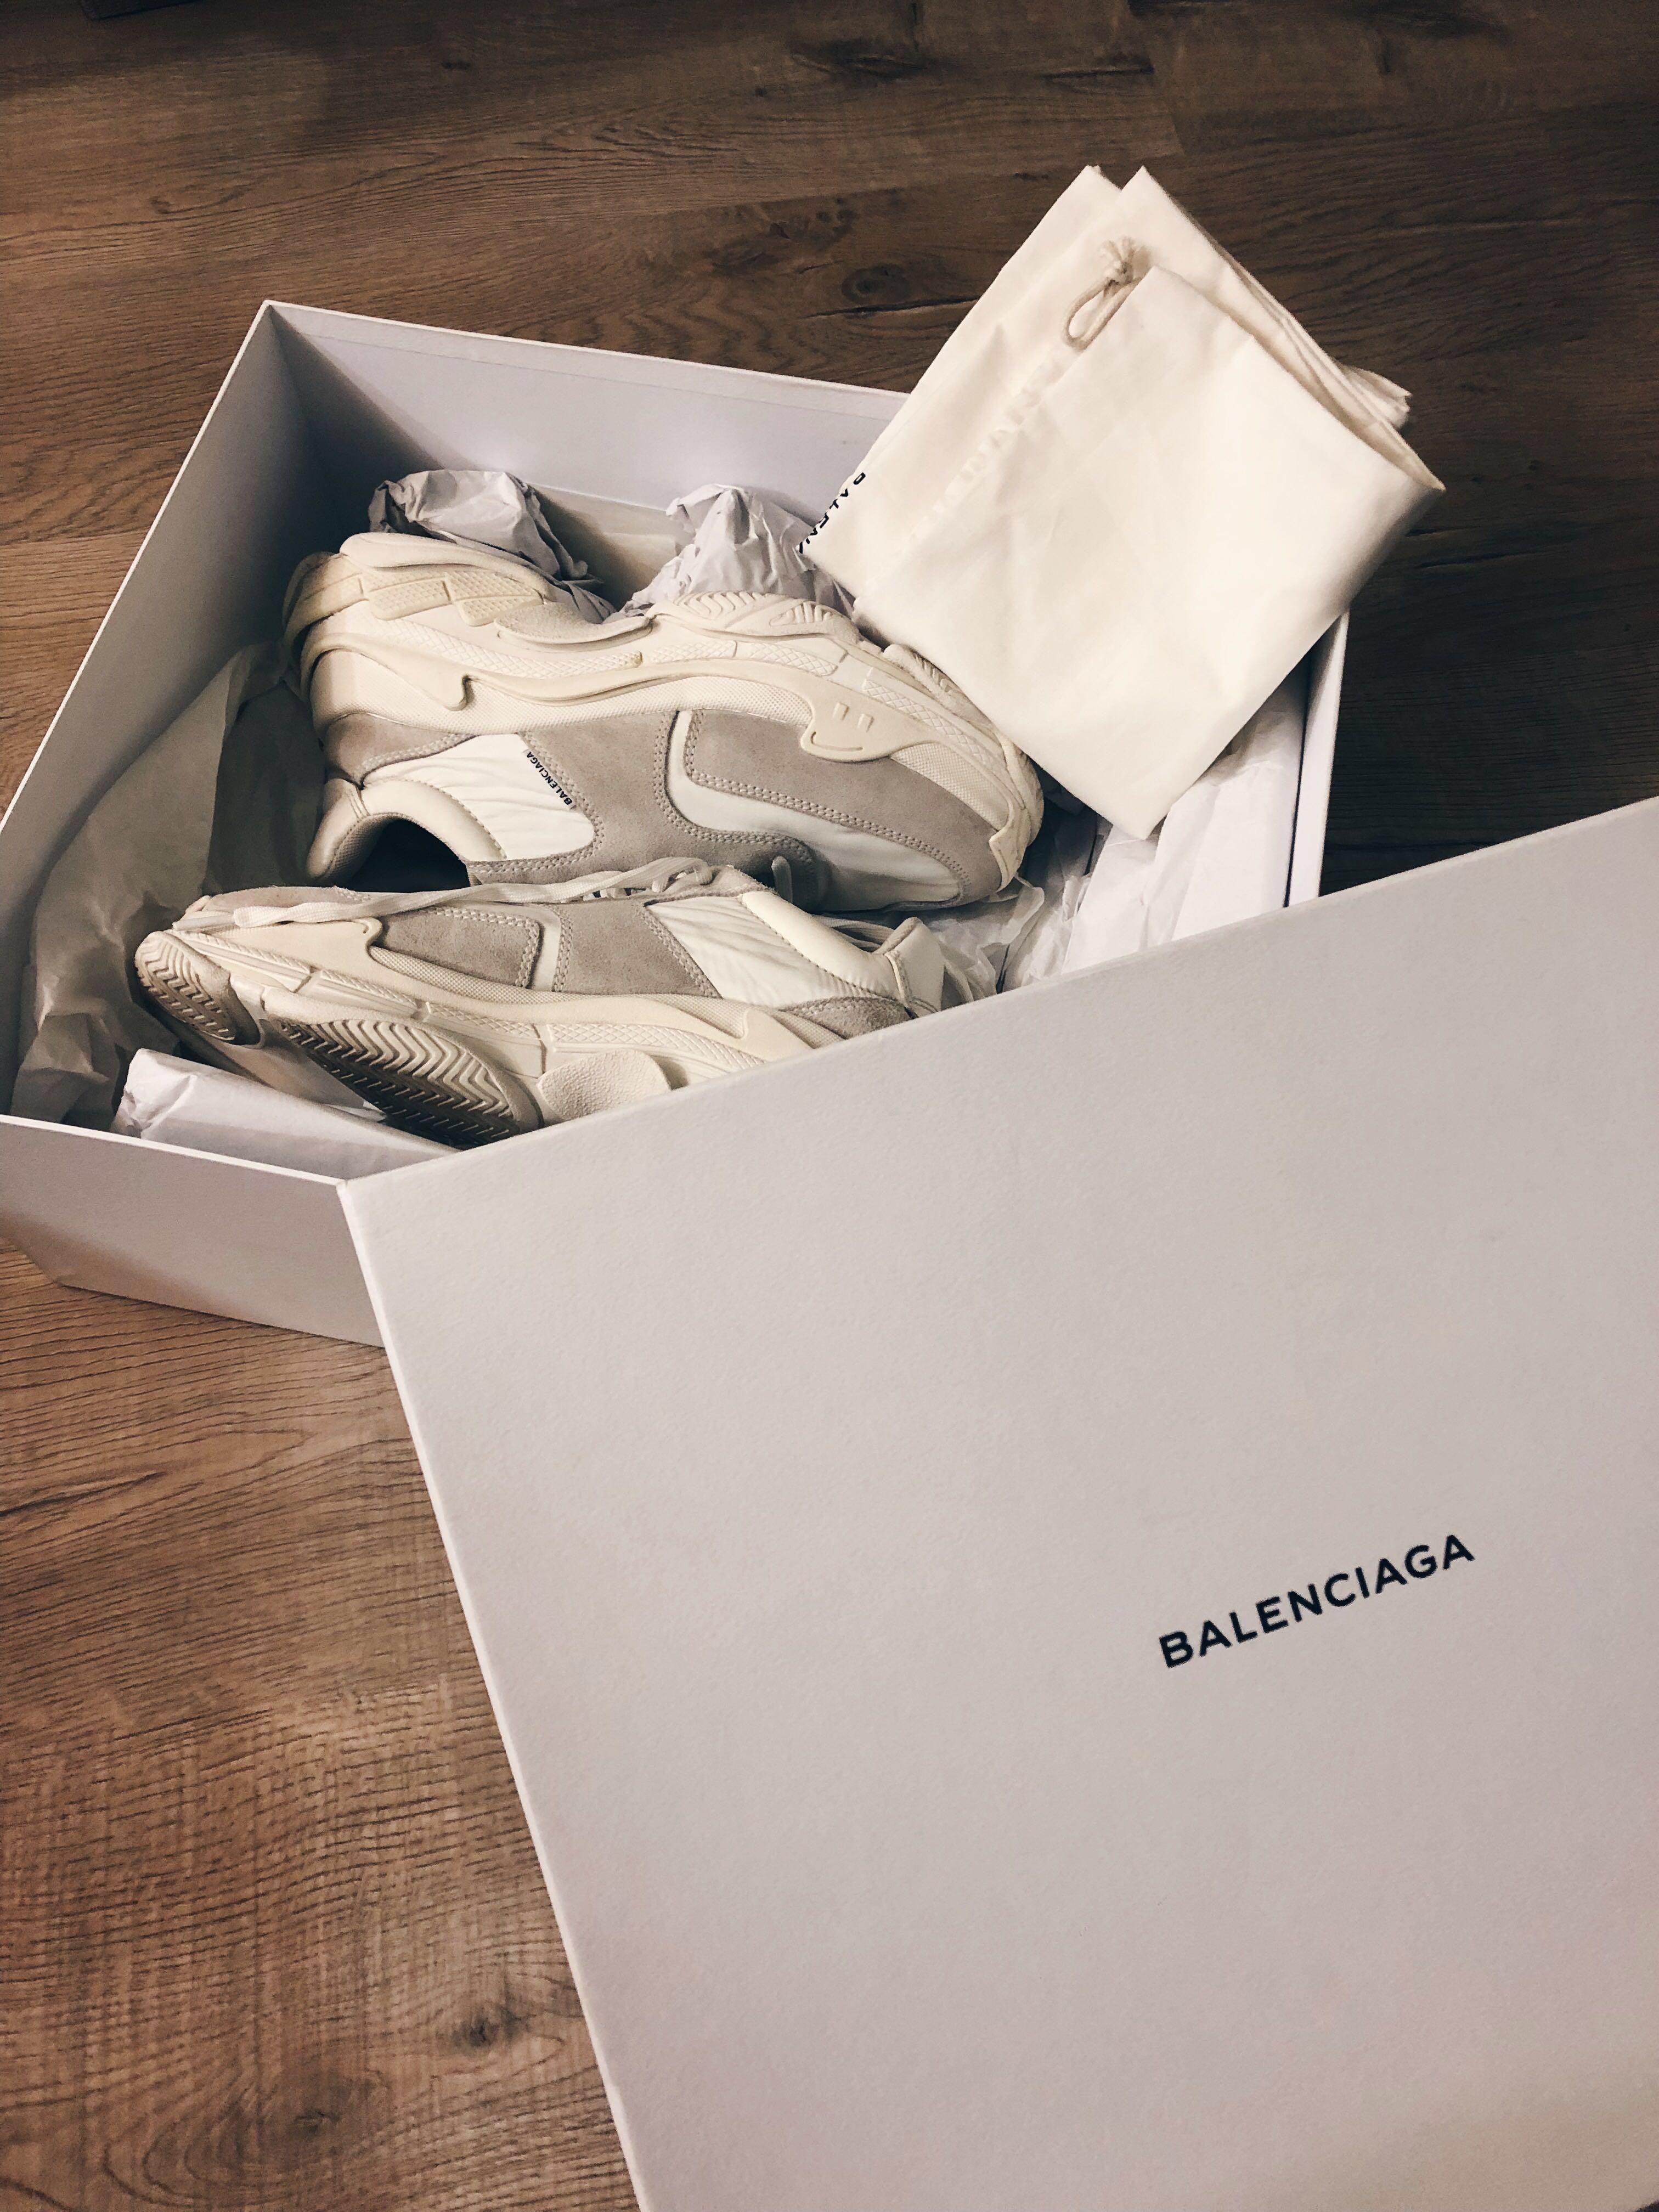 Review Balenciaga Triple S from Aichaoxieli FashionReps Reddit